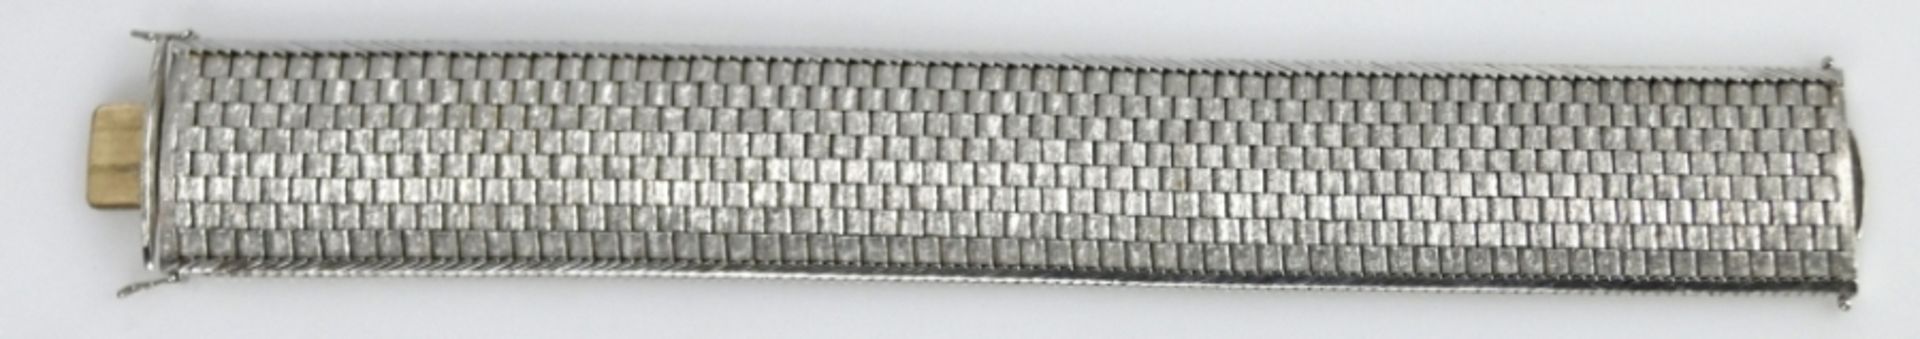 Breites Armband aus satinierten, achtreihigen Gliedern, mit poliertem Rand, breite Form, rückseitig - Bild 2 aus 3